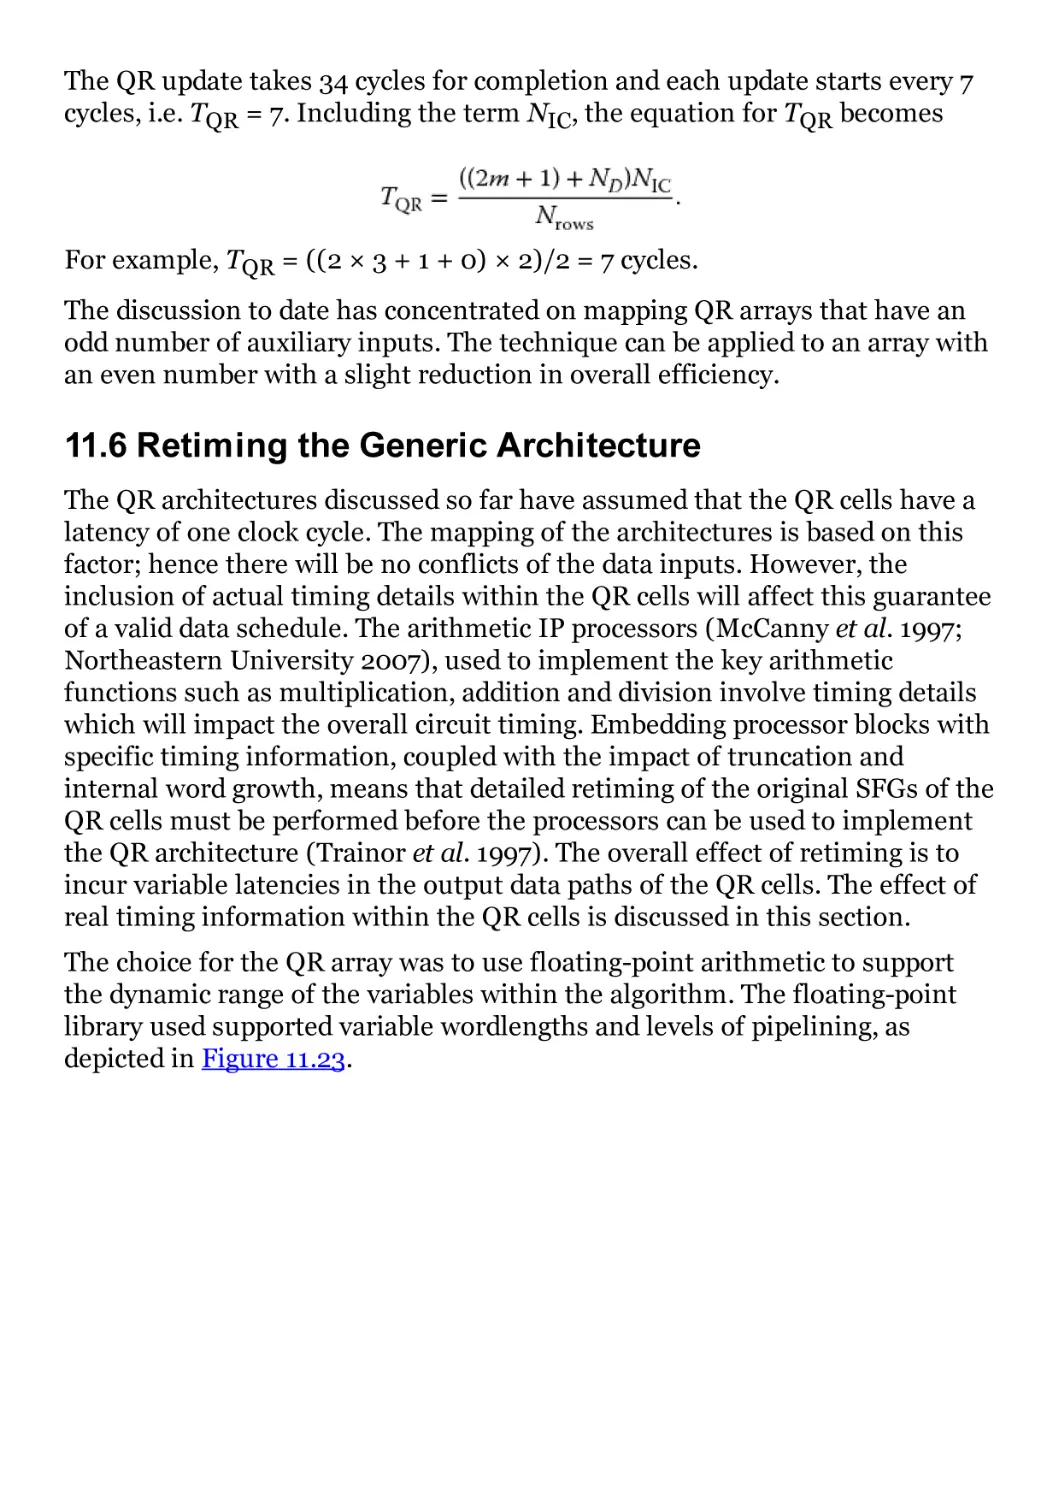 11.6 Retiming the Generic Architecture